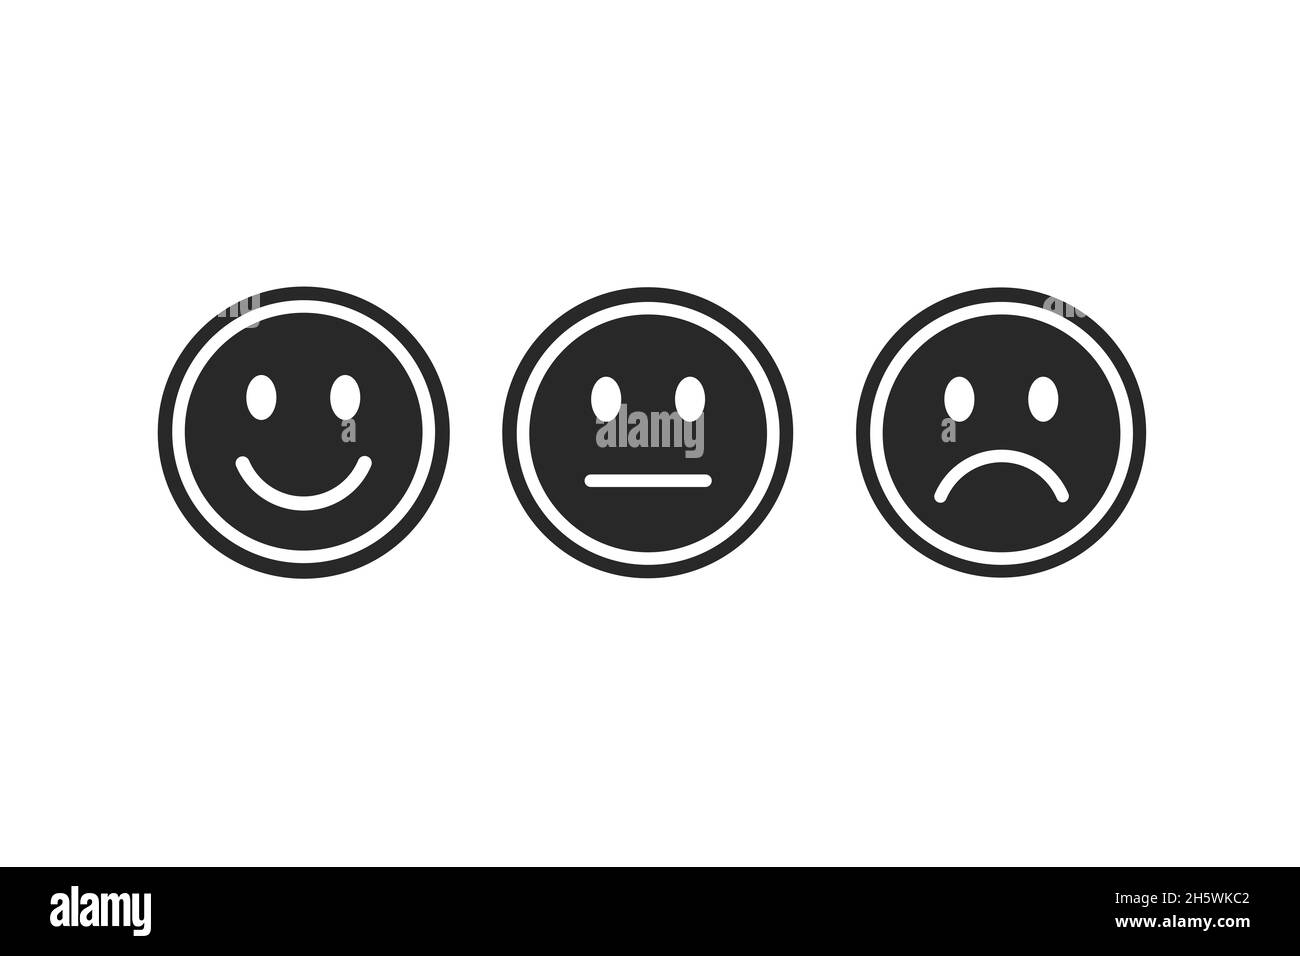 Modernes Emoji-Lächeln. Glücklich, neutral und traurig unglücklich. Emoticon setzte Ikonen, glücklich, neutral, unglücklich traurig Stockfoto